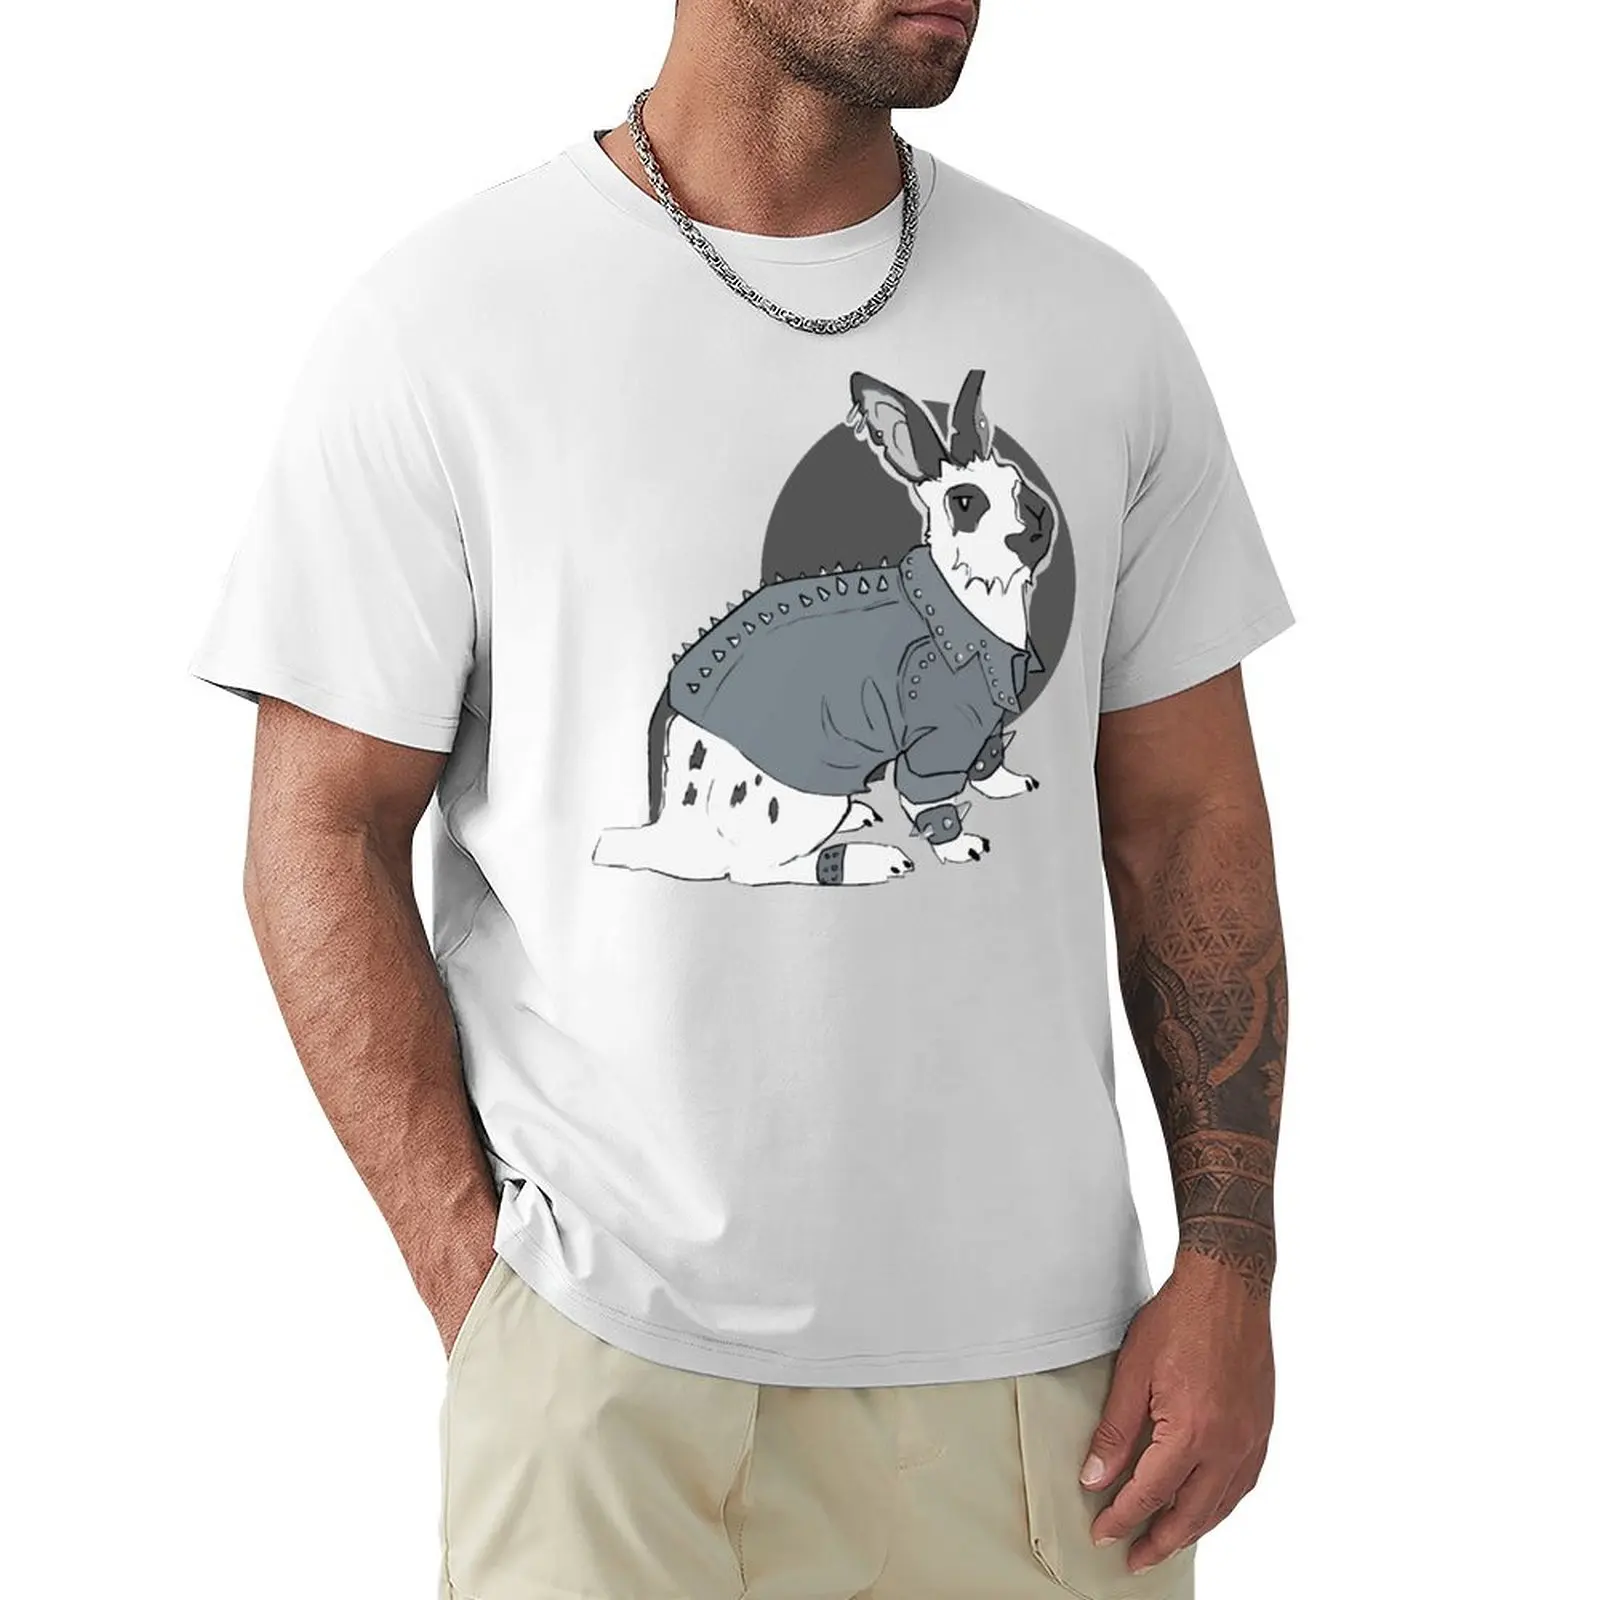 

Punk Bunny T-shirt quick drying summer clothes tops customs Men's t shirts